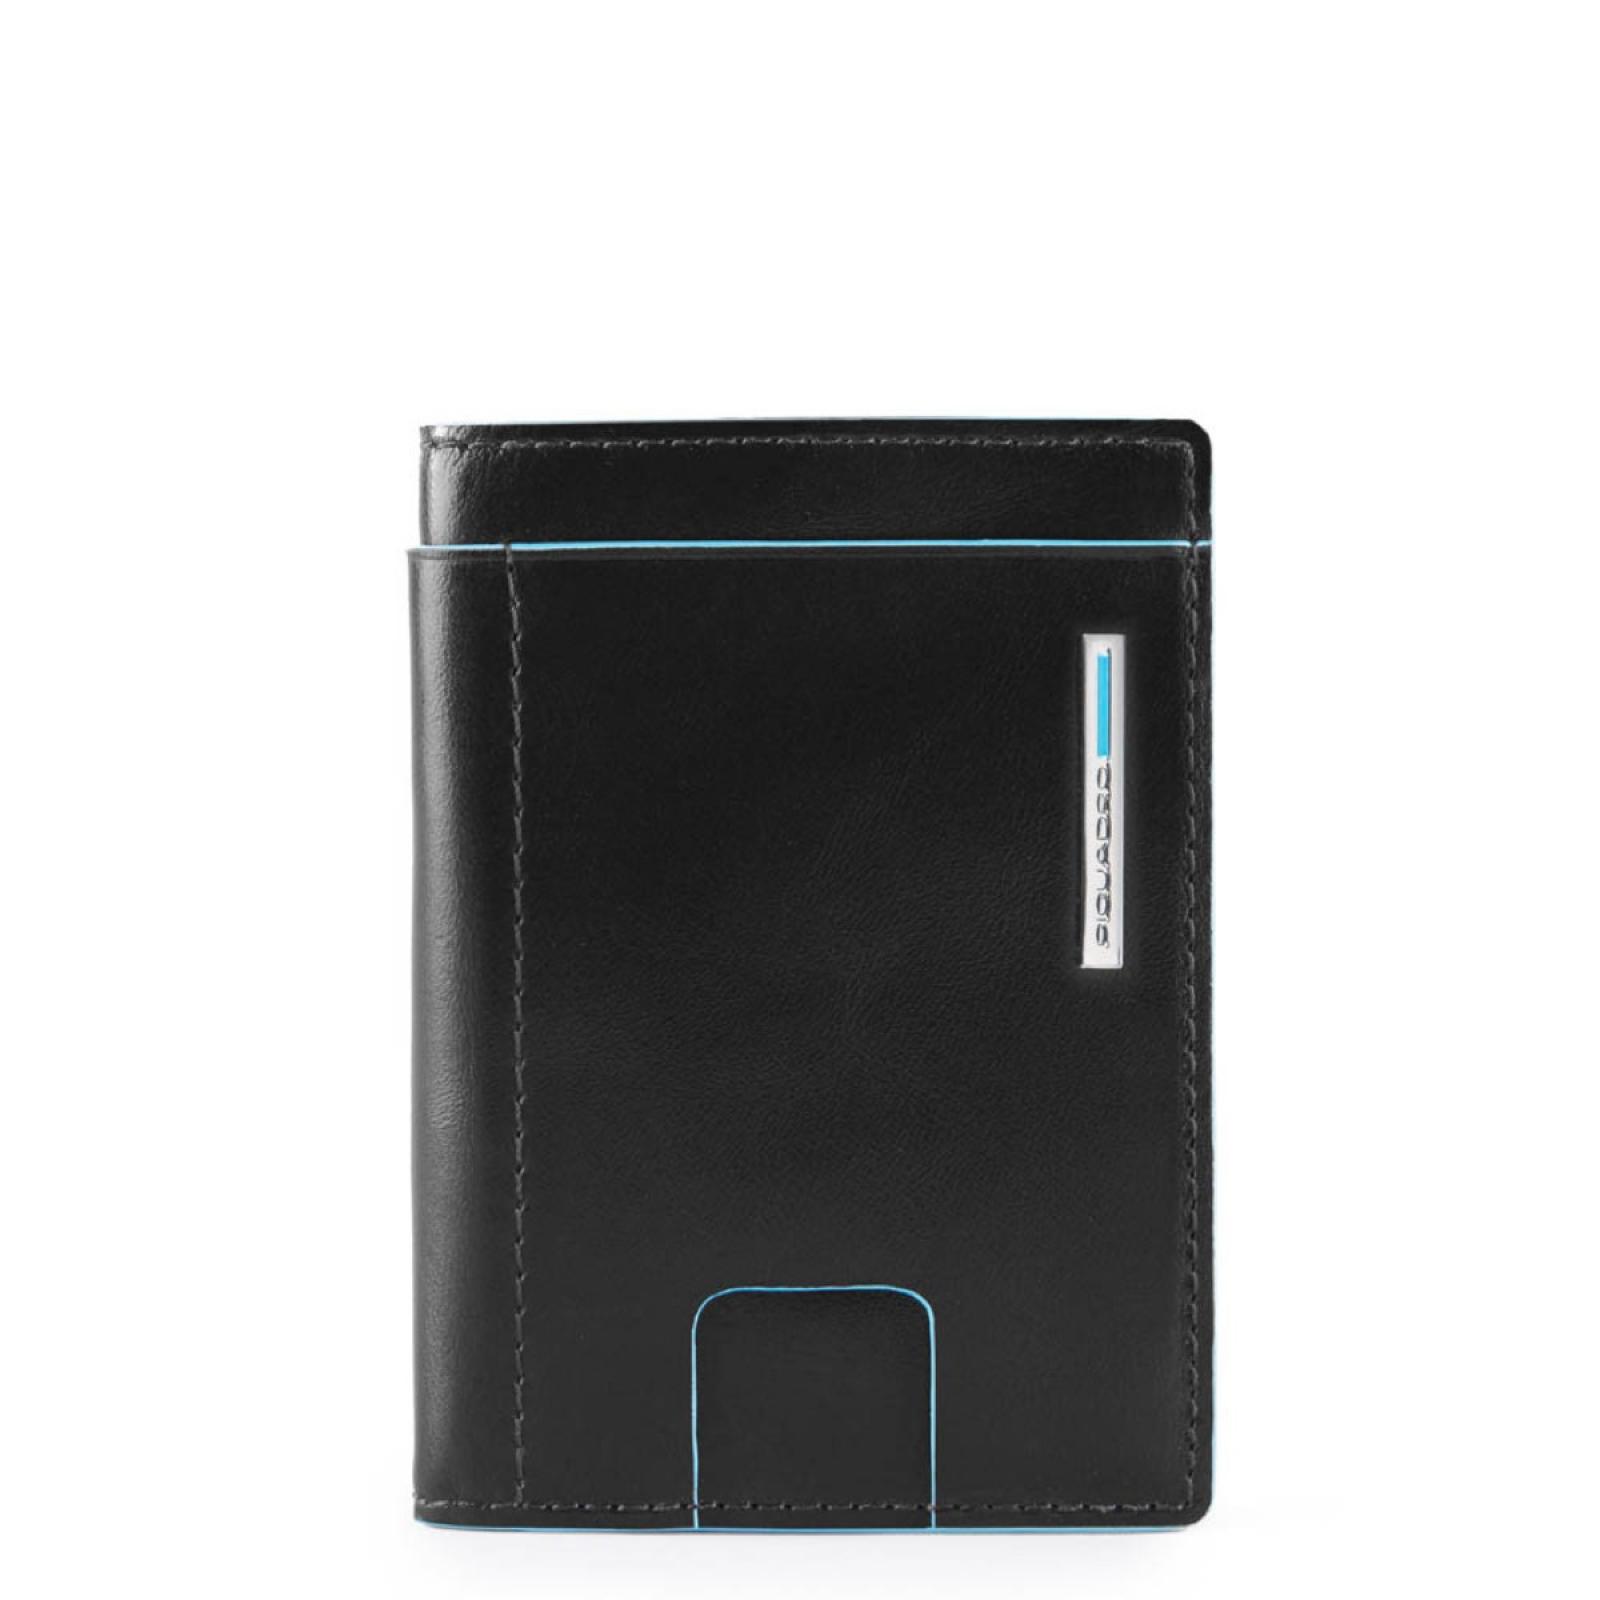 Piquadro Porta Carte di Credito Blue Square RFID - 1